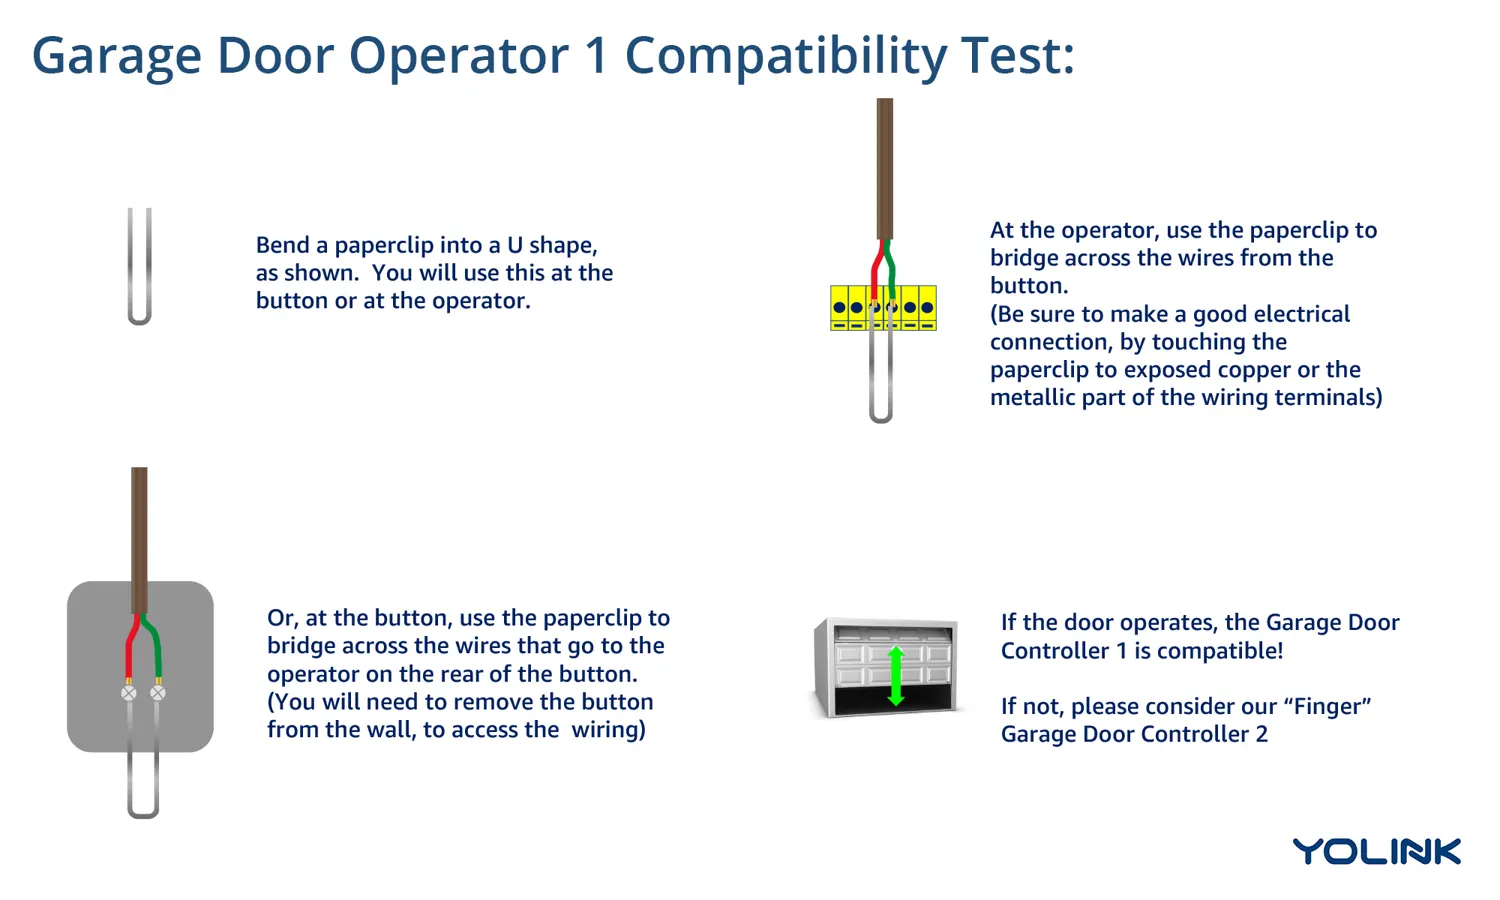 YoLink Garage Door Operator 1 Compatibility Test for Smart Garage Opener 